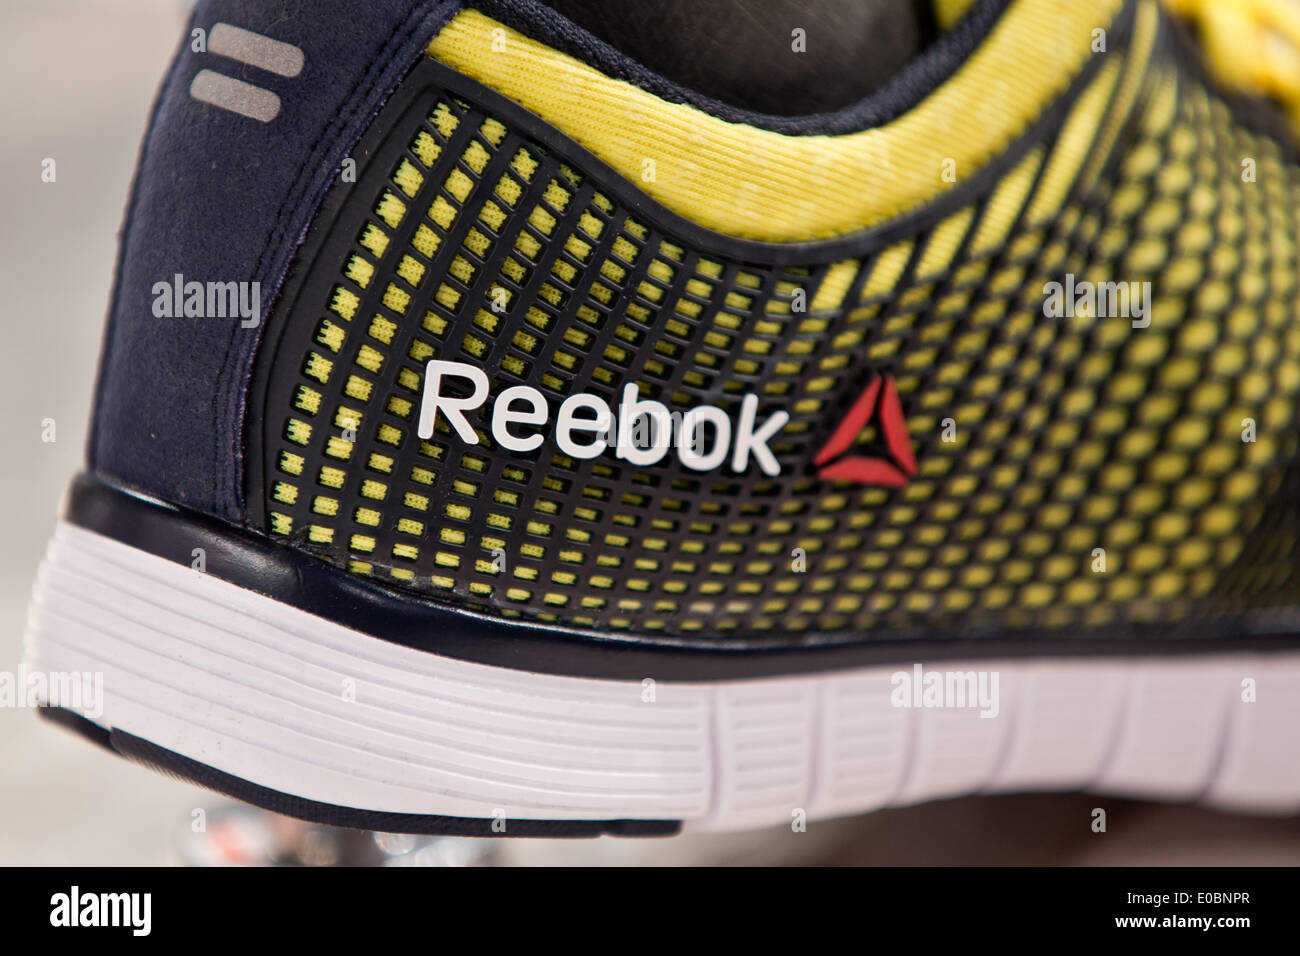 logotipo de la marca Reebok de de artículos deportivos Adidas es visto en una zapatilla de fútbol durante la reunión general de adidas en Fürth, Alemania, 08 mayo de